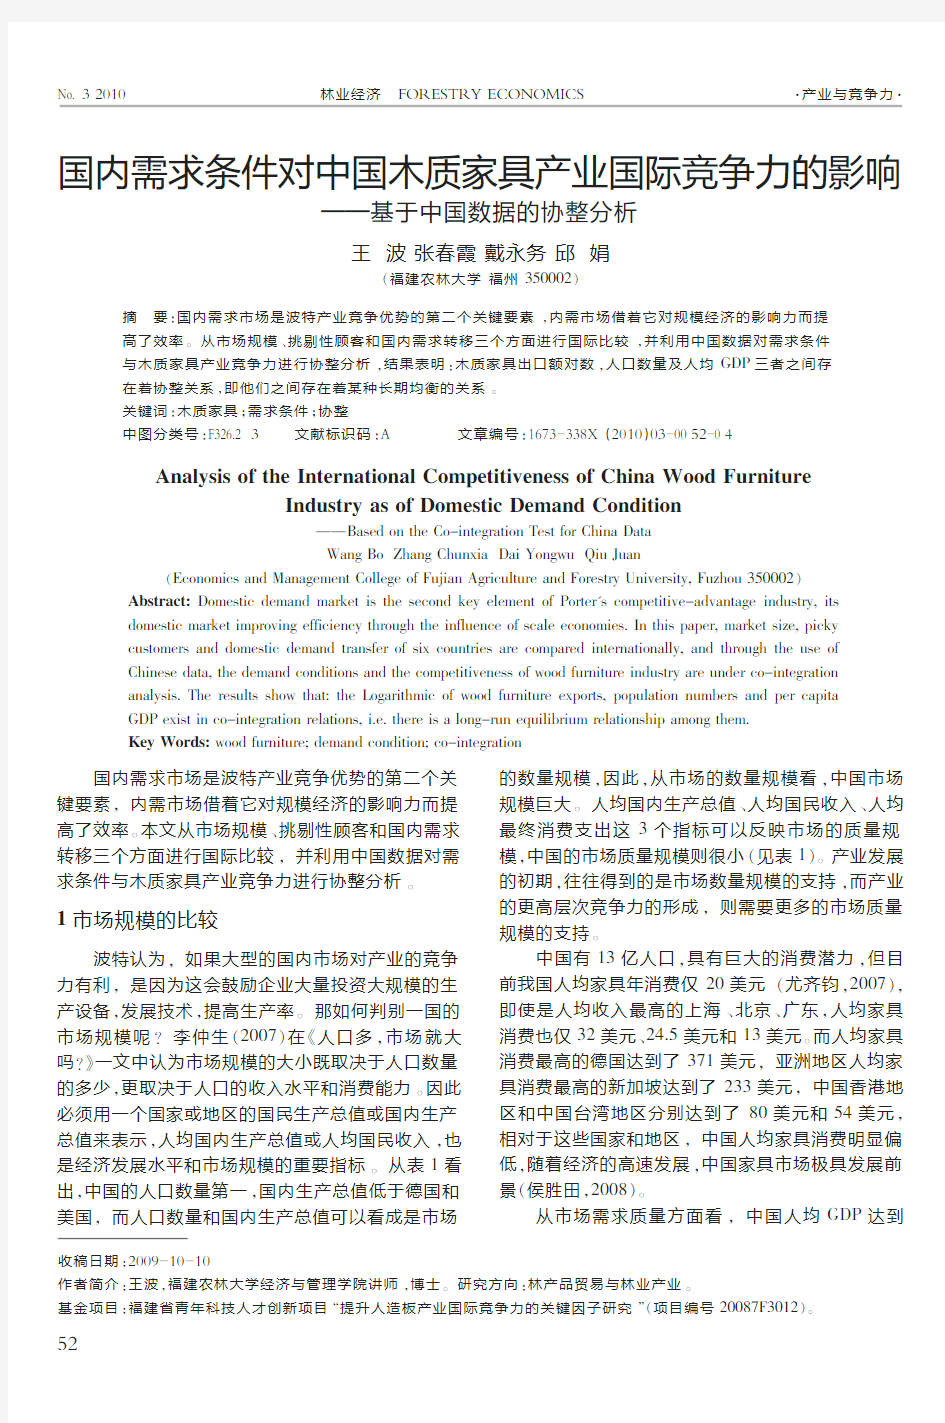 国内需求条件对中国木质家具产业国际竞争力的影响_基于中国数据的协整分析